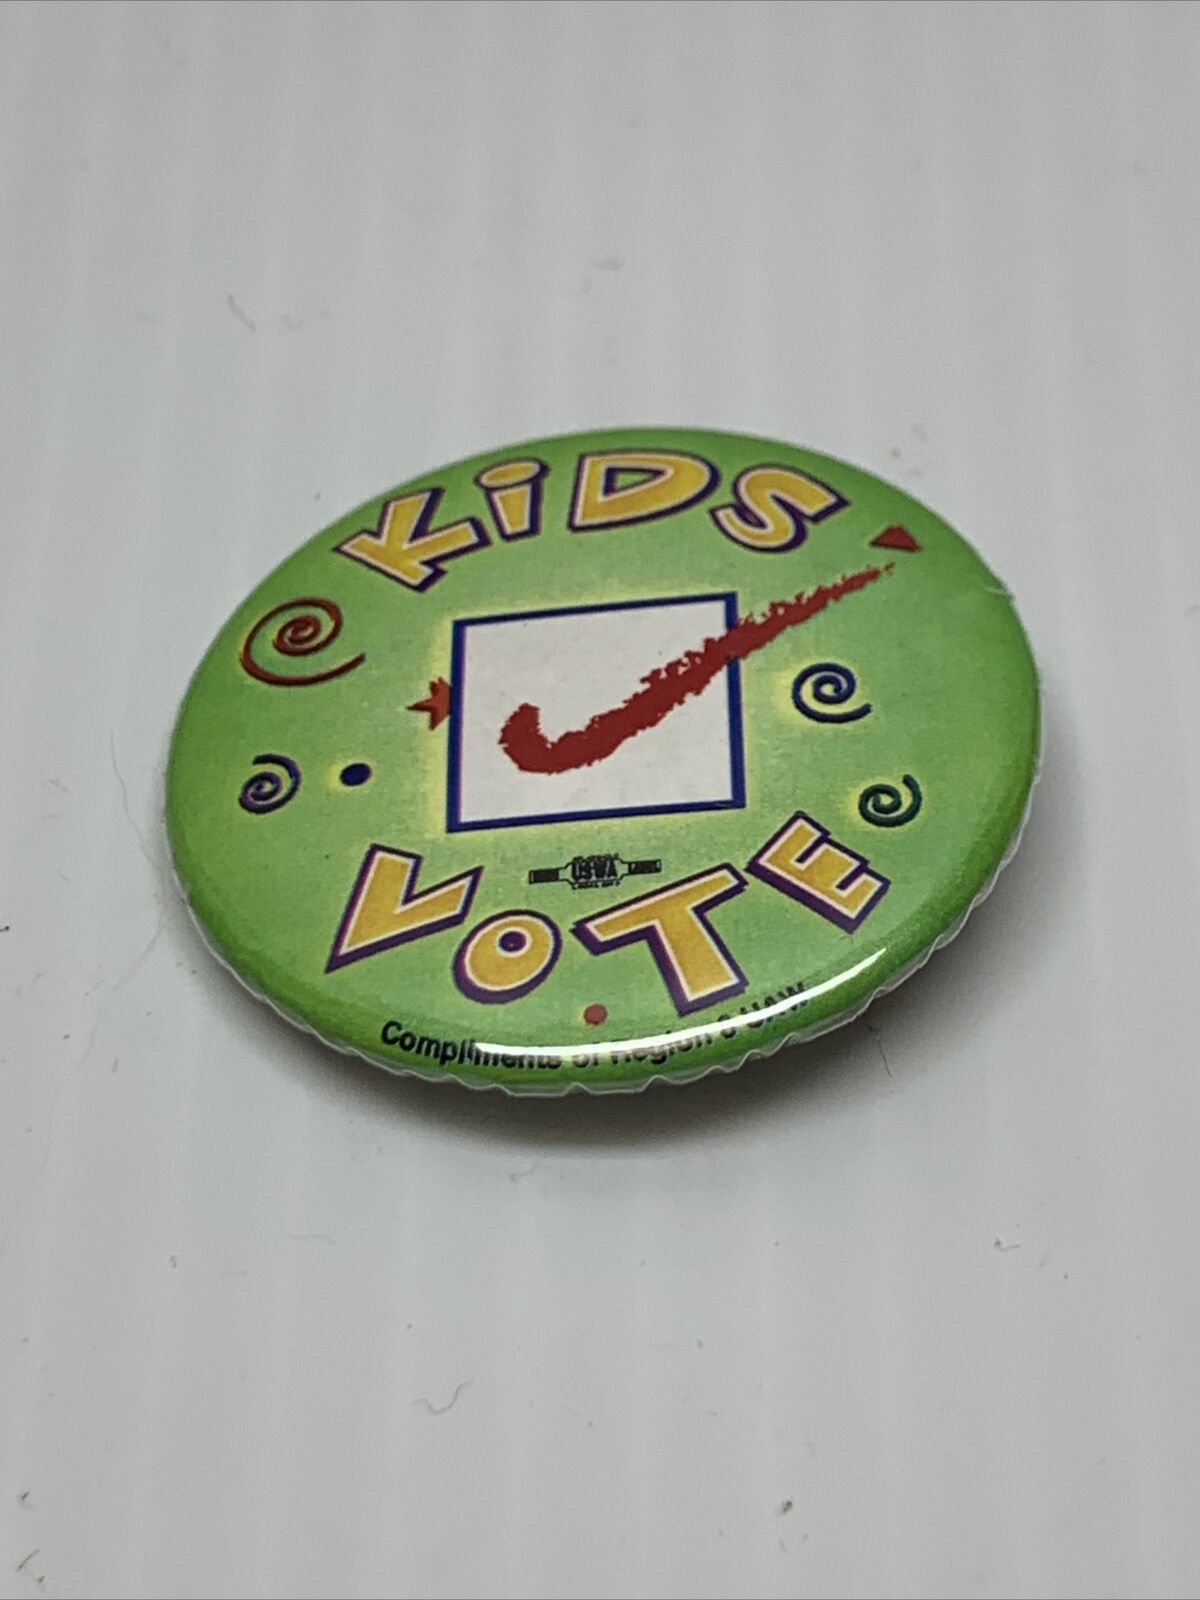 Vintage Retro Kids Vote Campaign Button Pin Election Politics KG